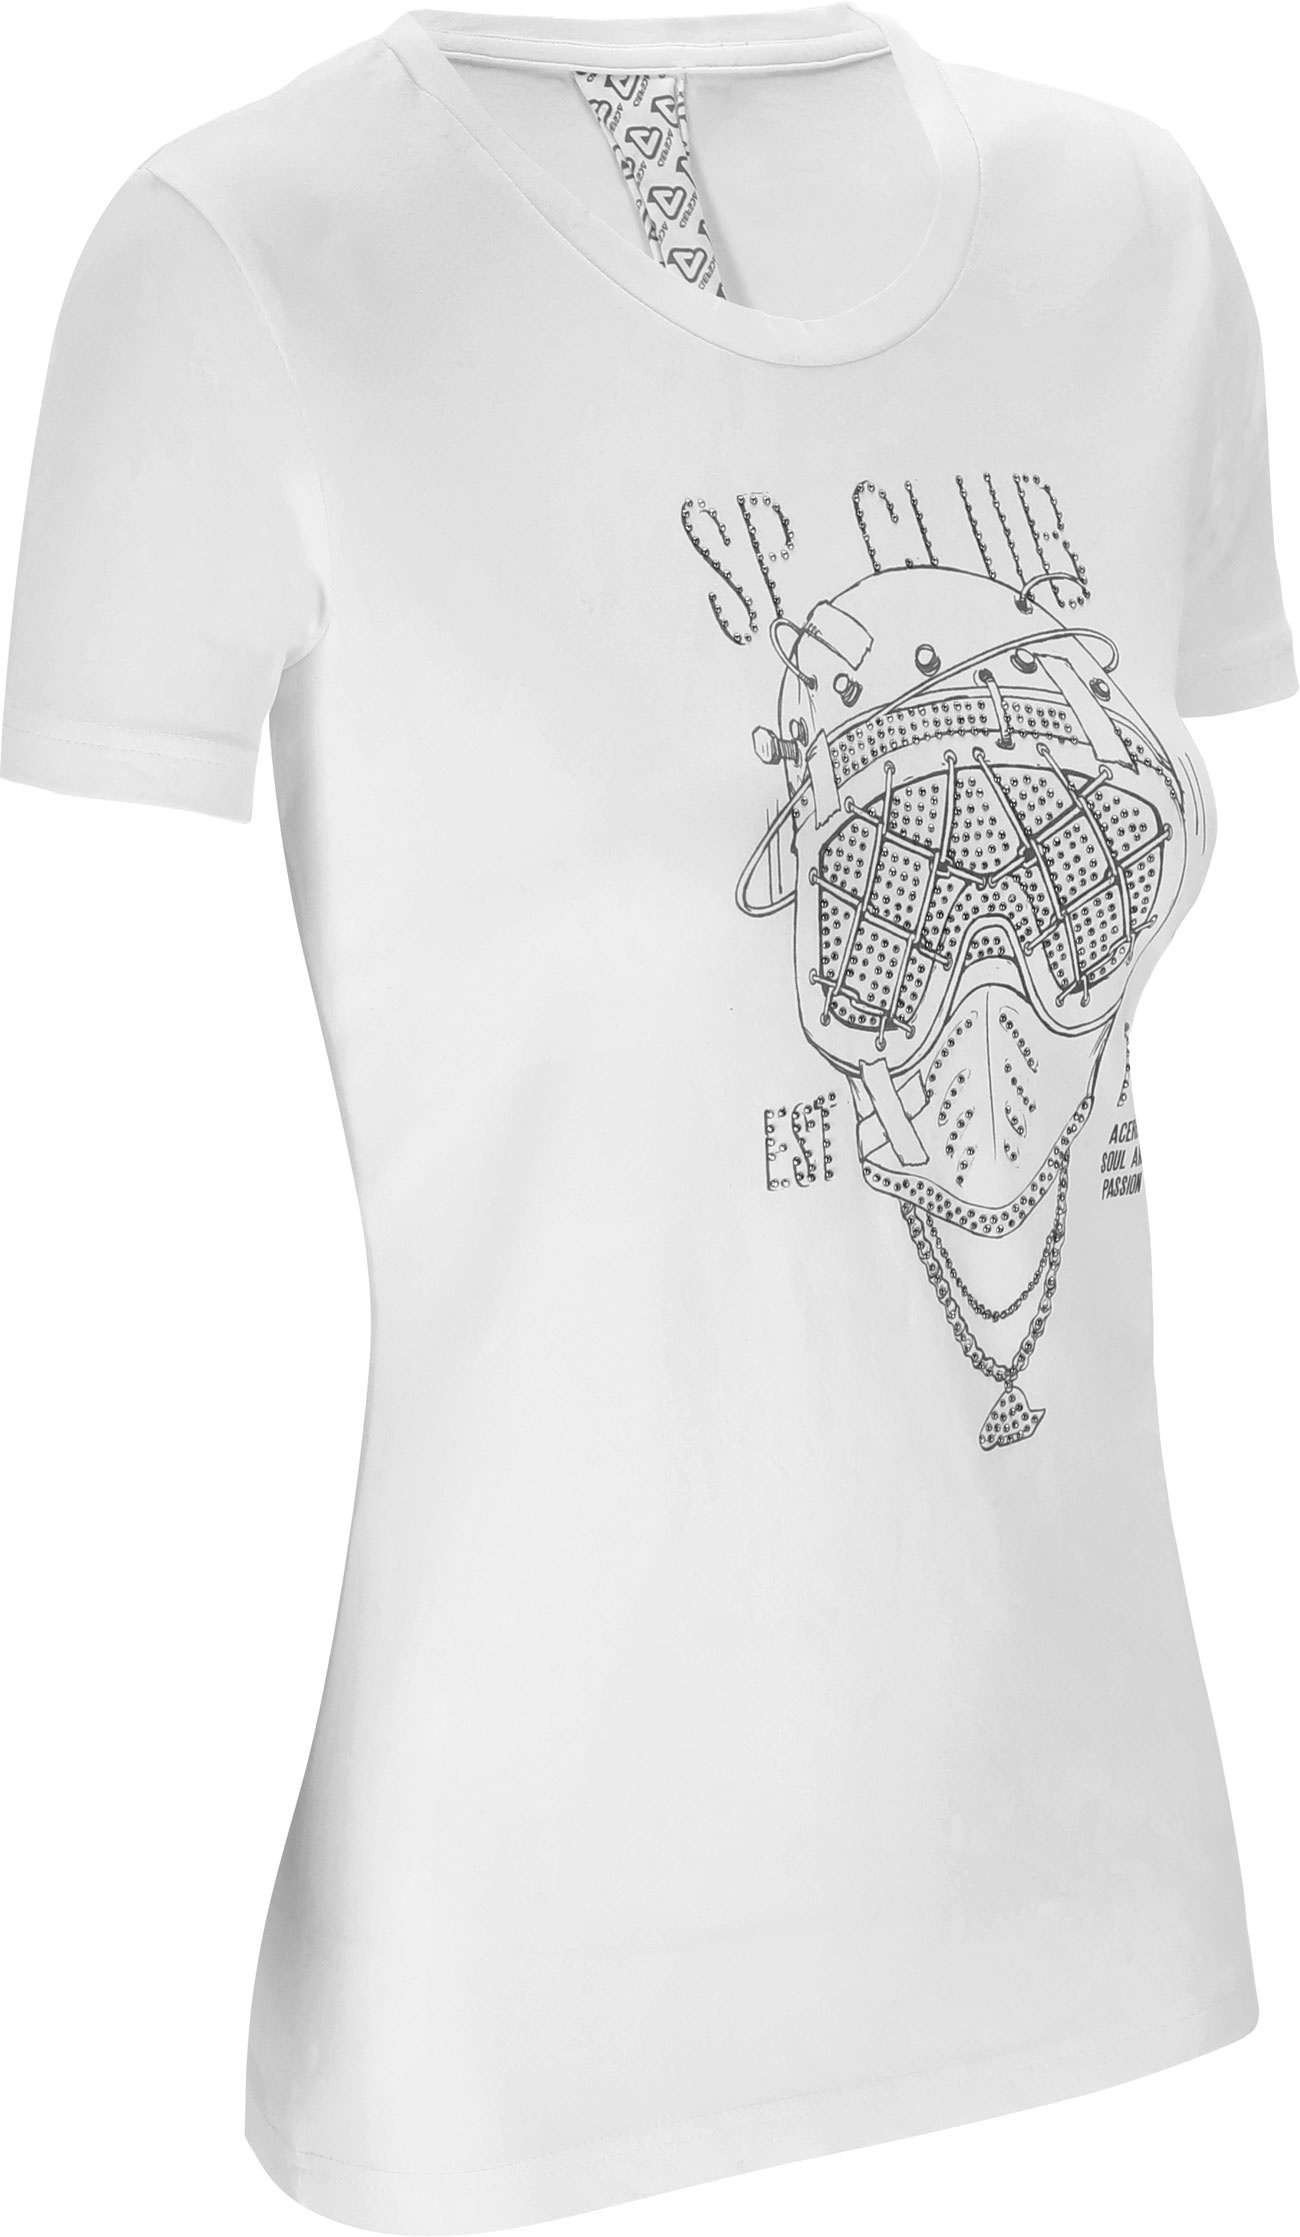 Acerbis SP Club Diver, t-shirt femmes - Blanc/Noir - XS